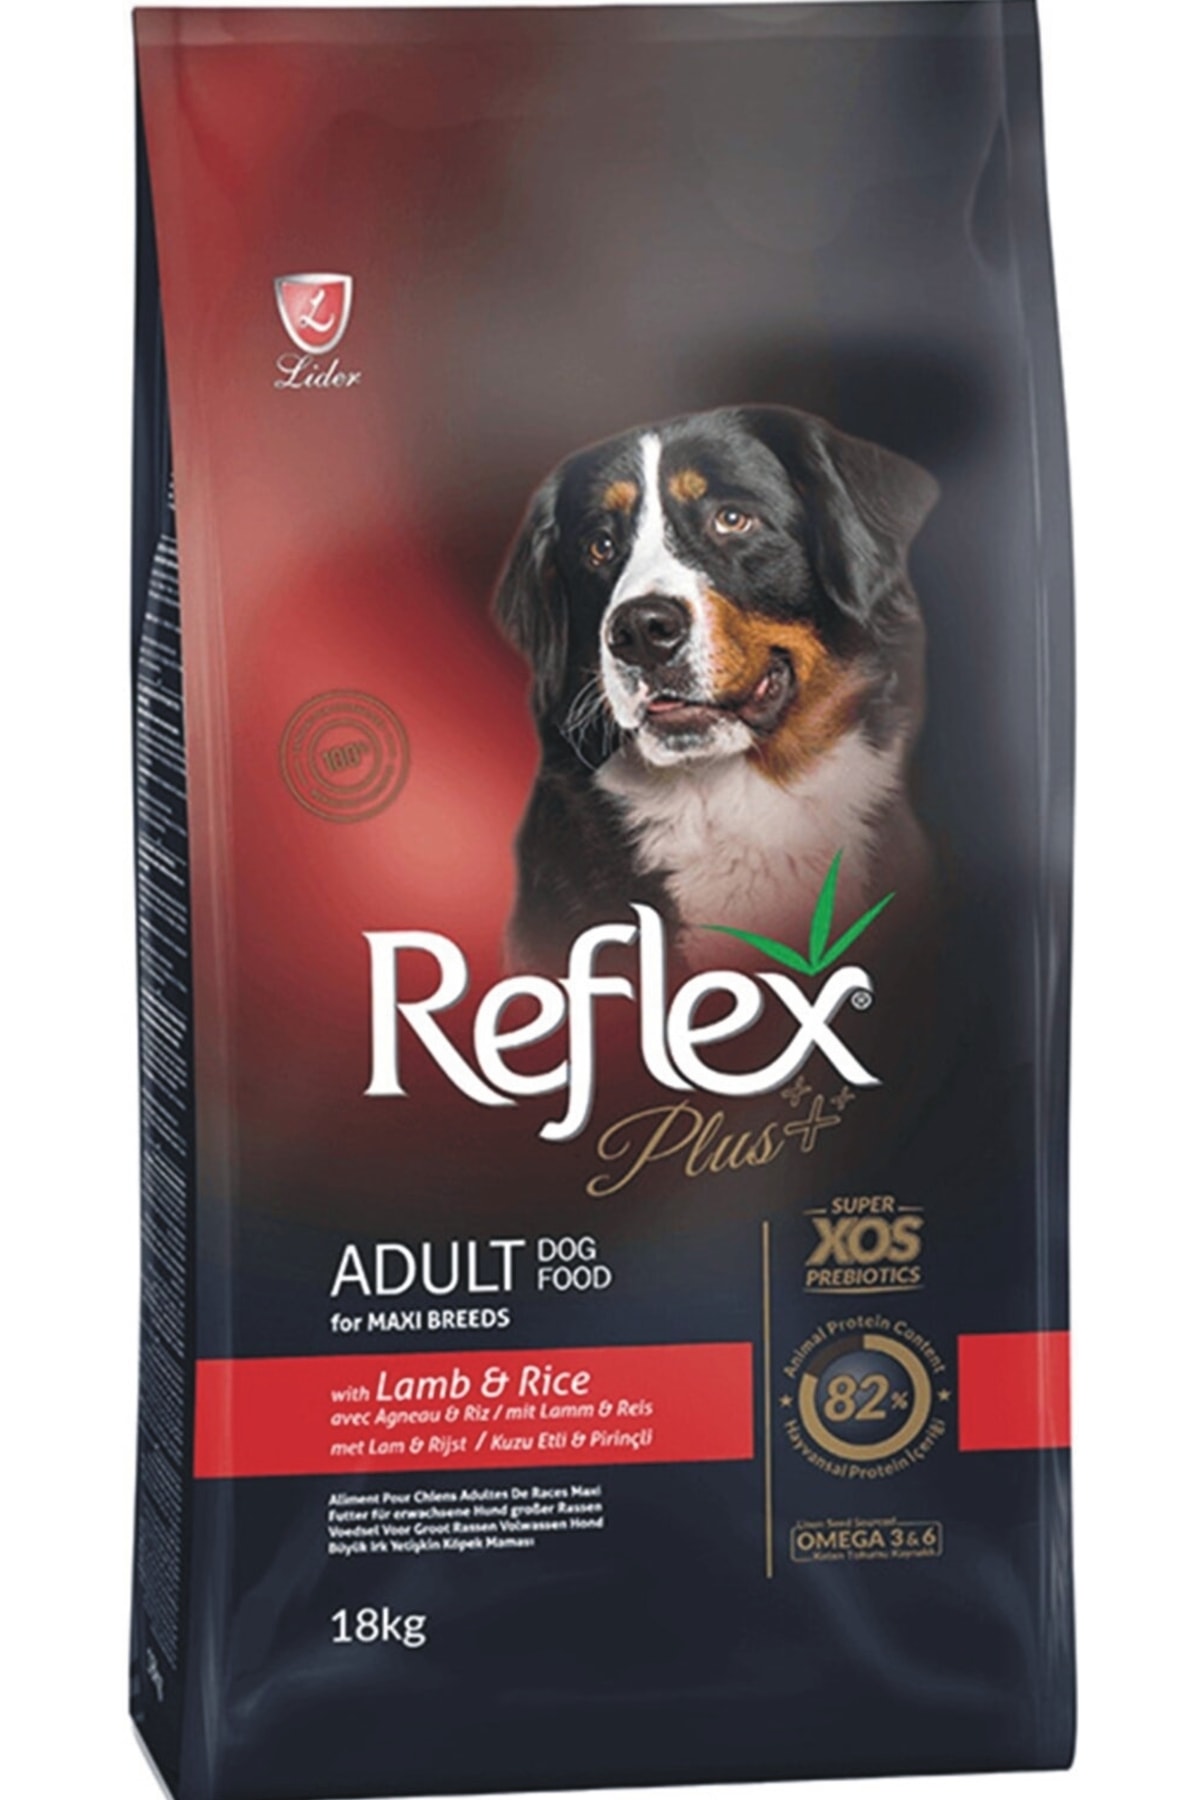 Reflex Orta ve Büyük Irk Kuzu Etli ve Prinçli Yetişkin Köpek Maması 18 kg